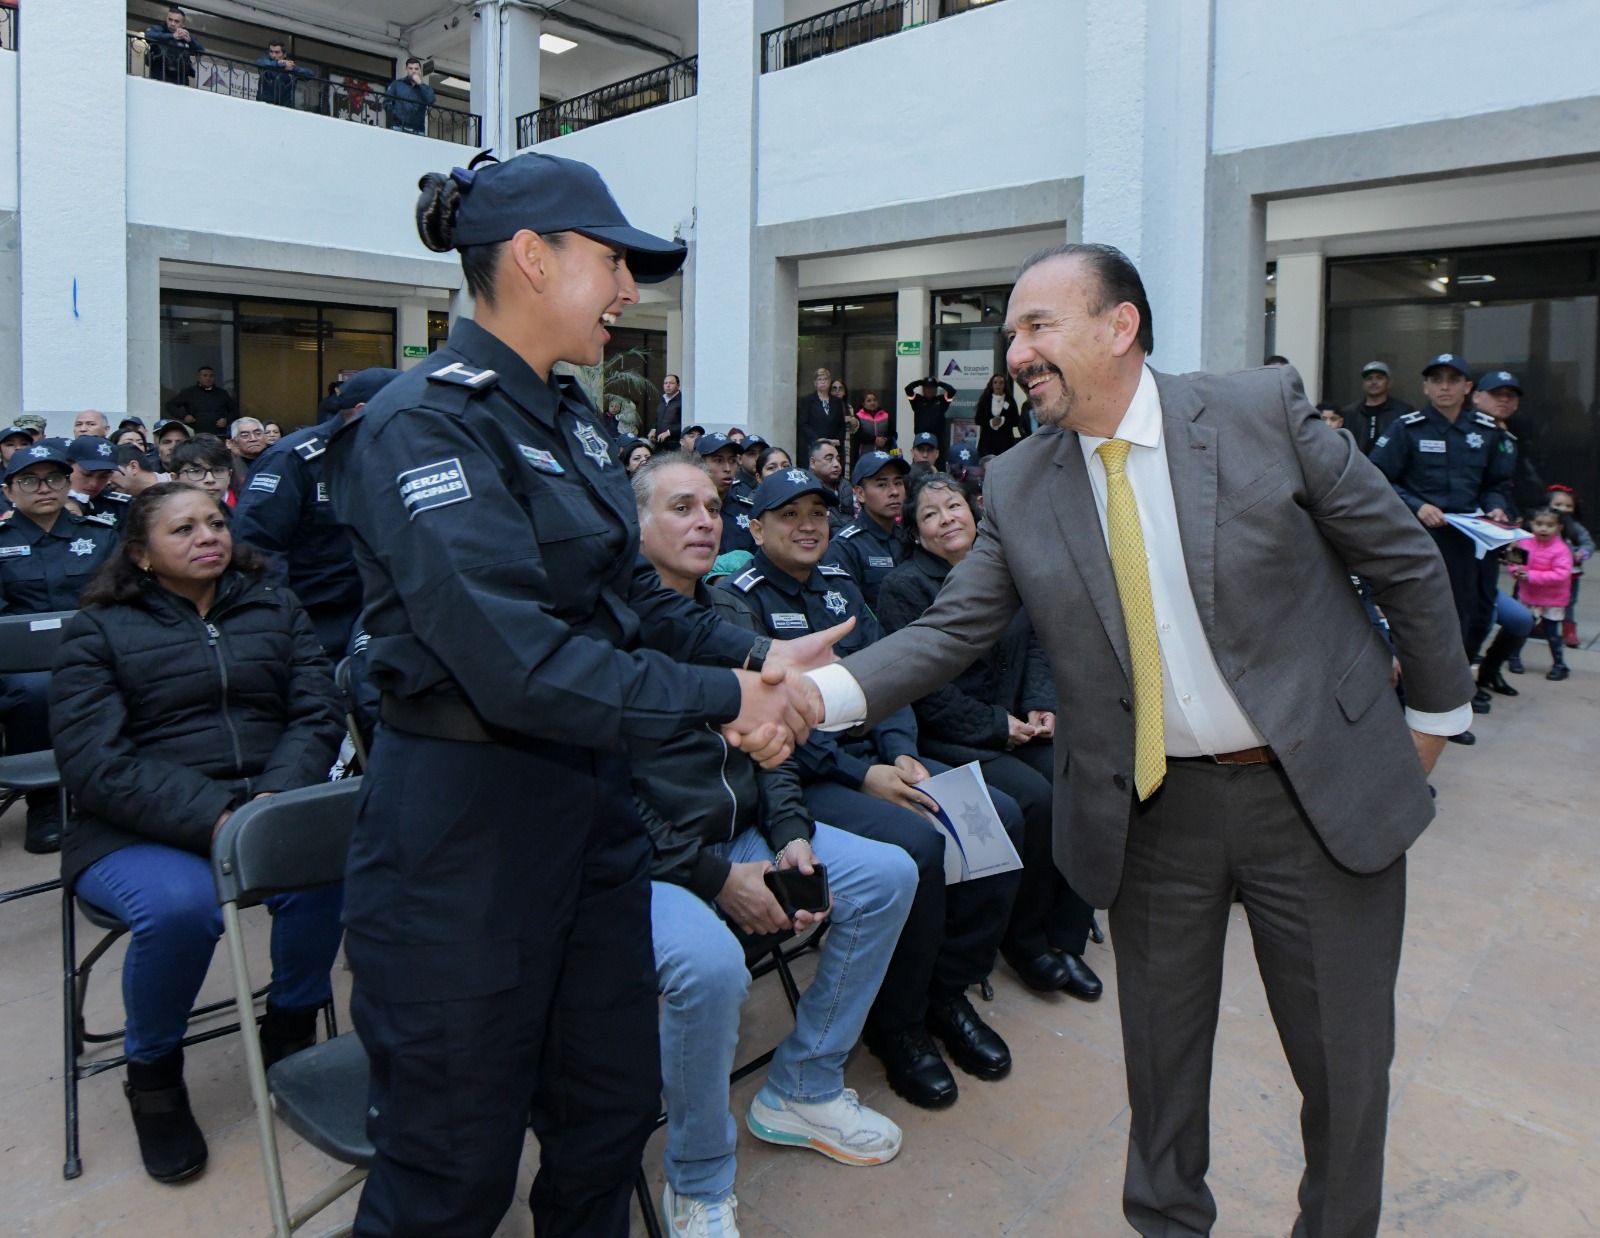 Policía de Atizapán de Zaragoza, reconocida por mayor reducción de delitos